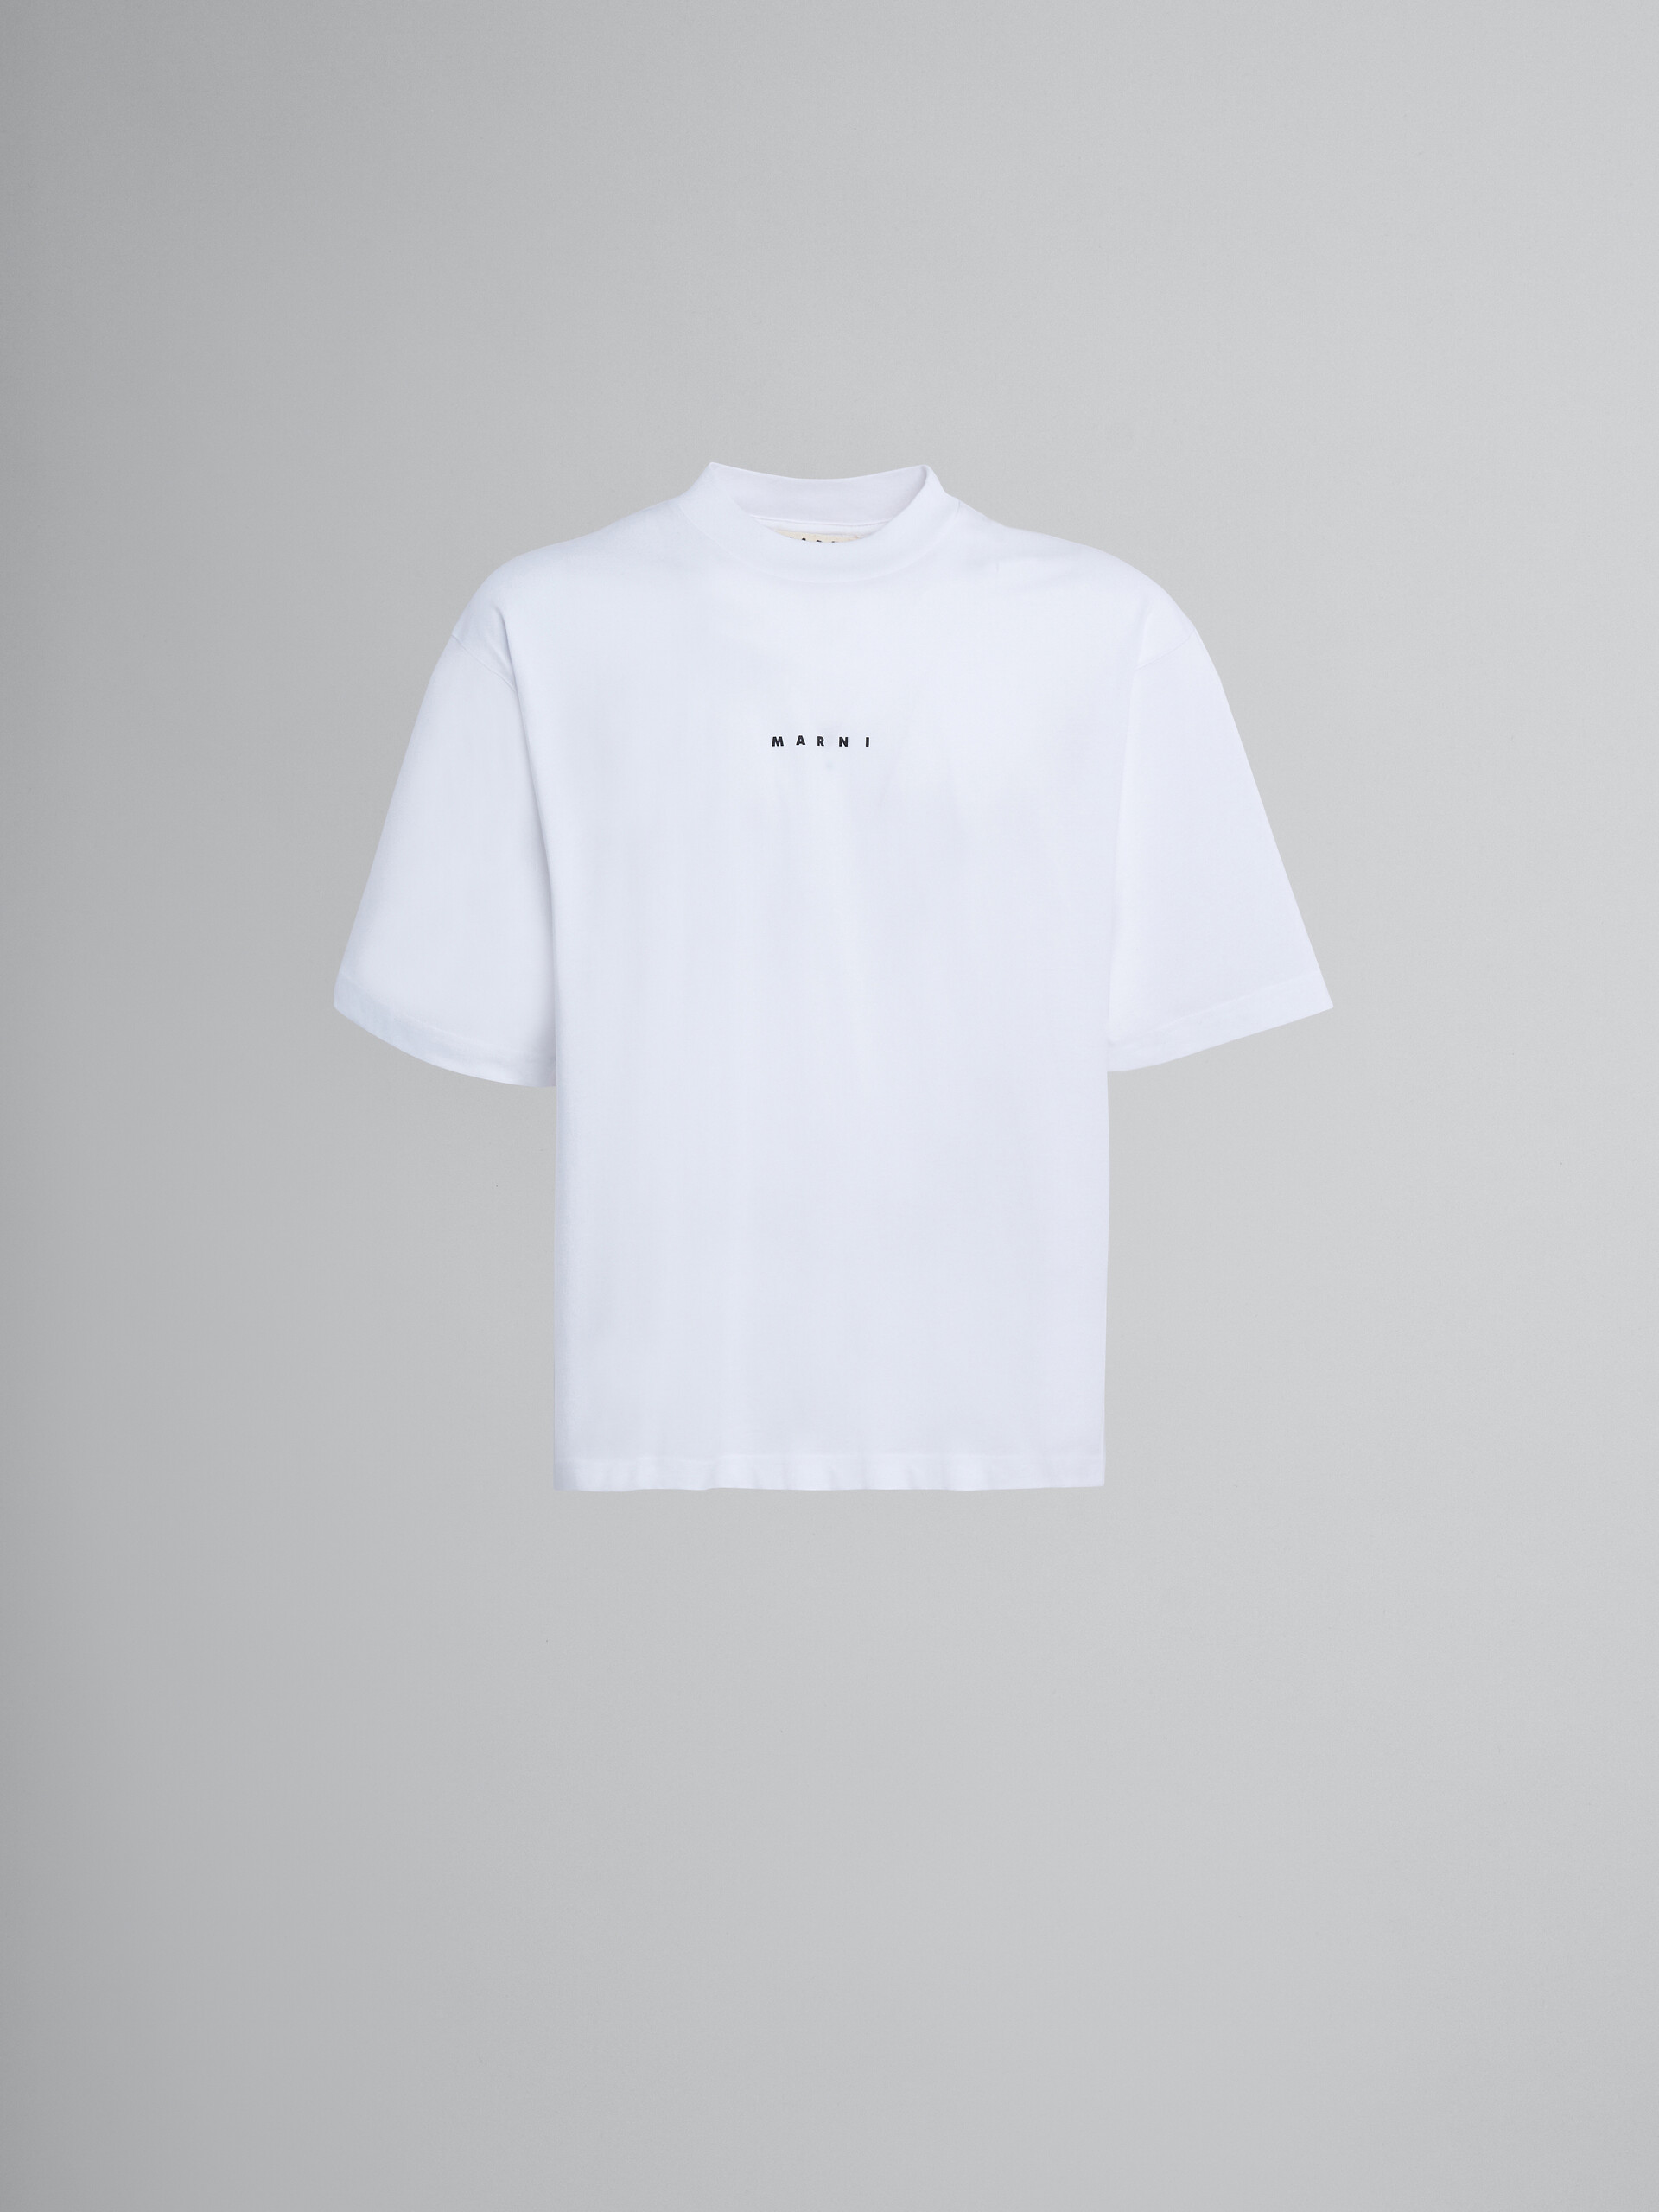 T-shirt en coton biologique blanc avec logo - T-shirts - Image 1